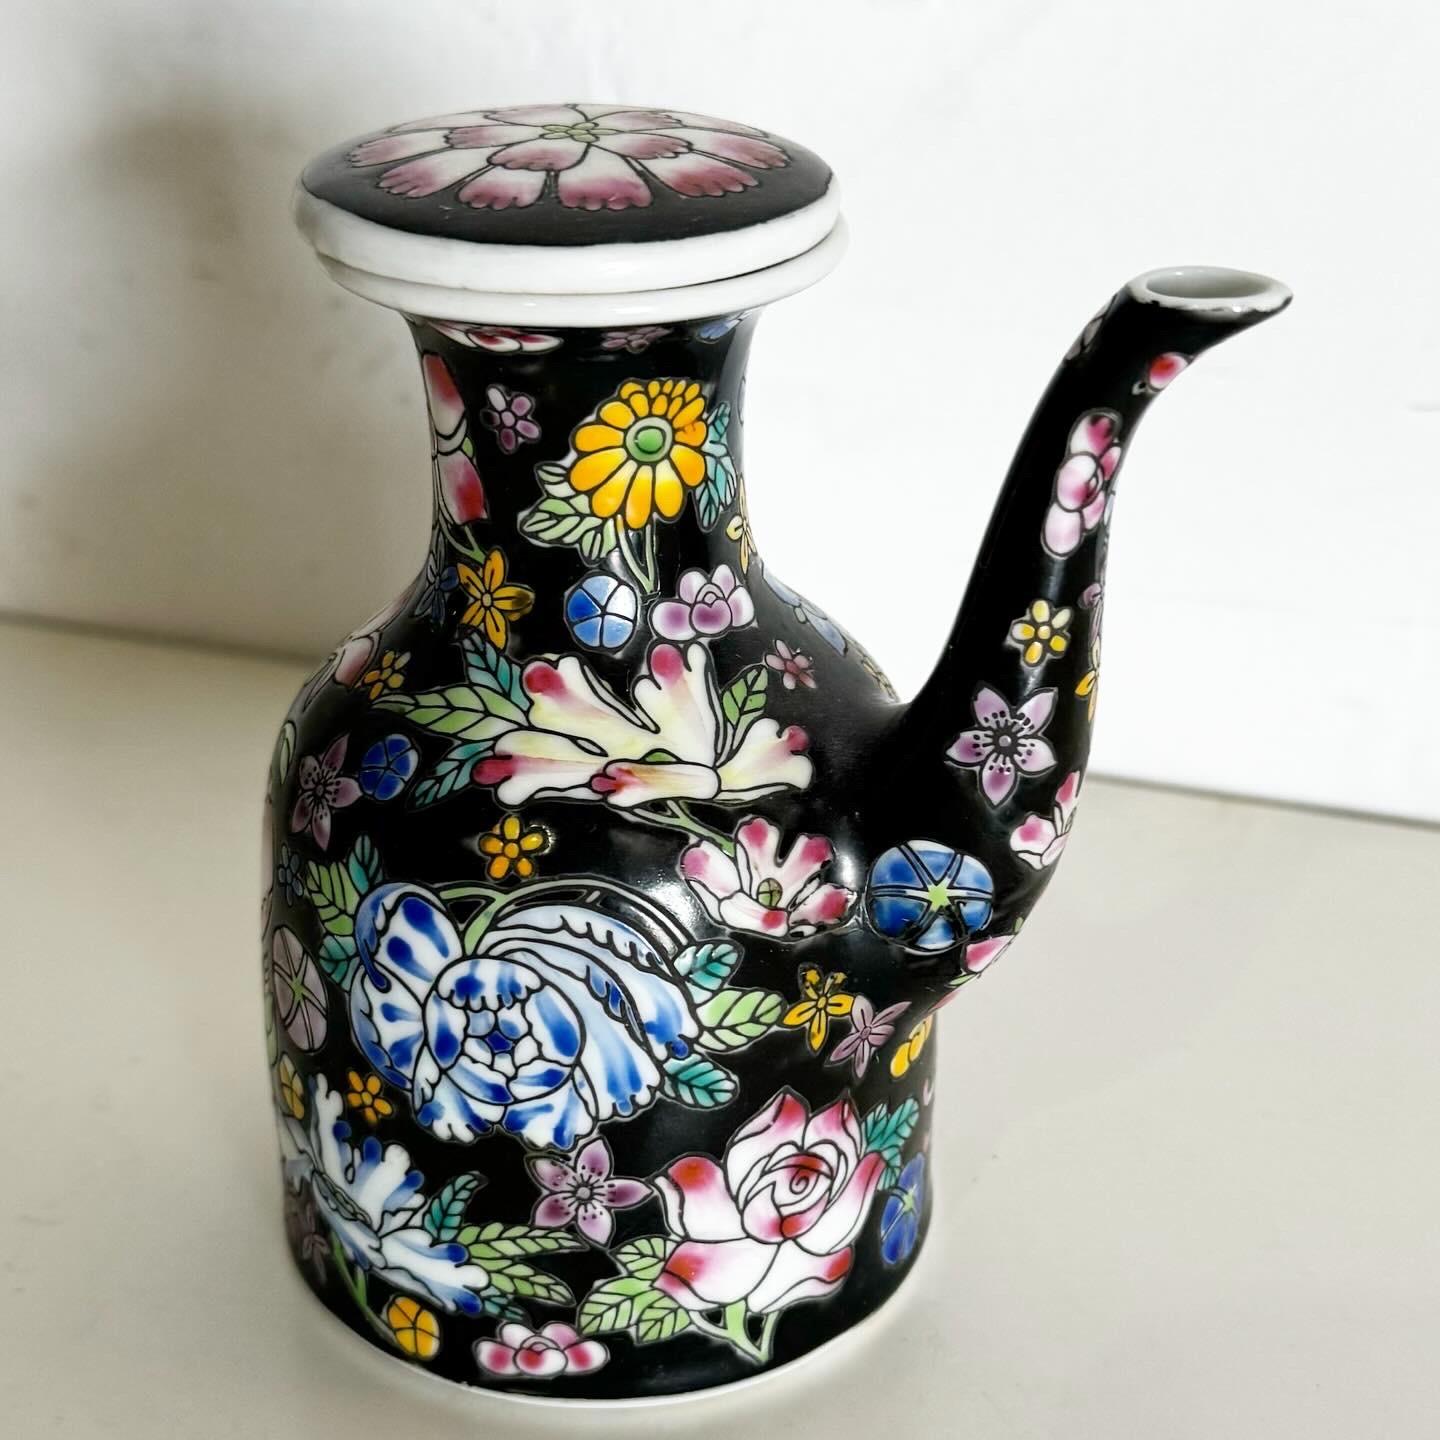 Entdecken Sie die Schönheit traditioneller Handwerkskunst mit dieser handbemalten chinesischen Teekanne/kleinen Kanne aus Porzellan. Mit ihren filigranen Mustern verkörpert sie die Eleganz der chinesischen Porzellankunst. Sie ist ideal für